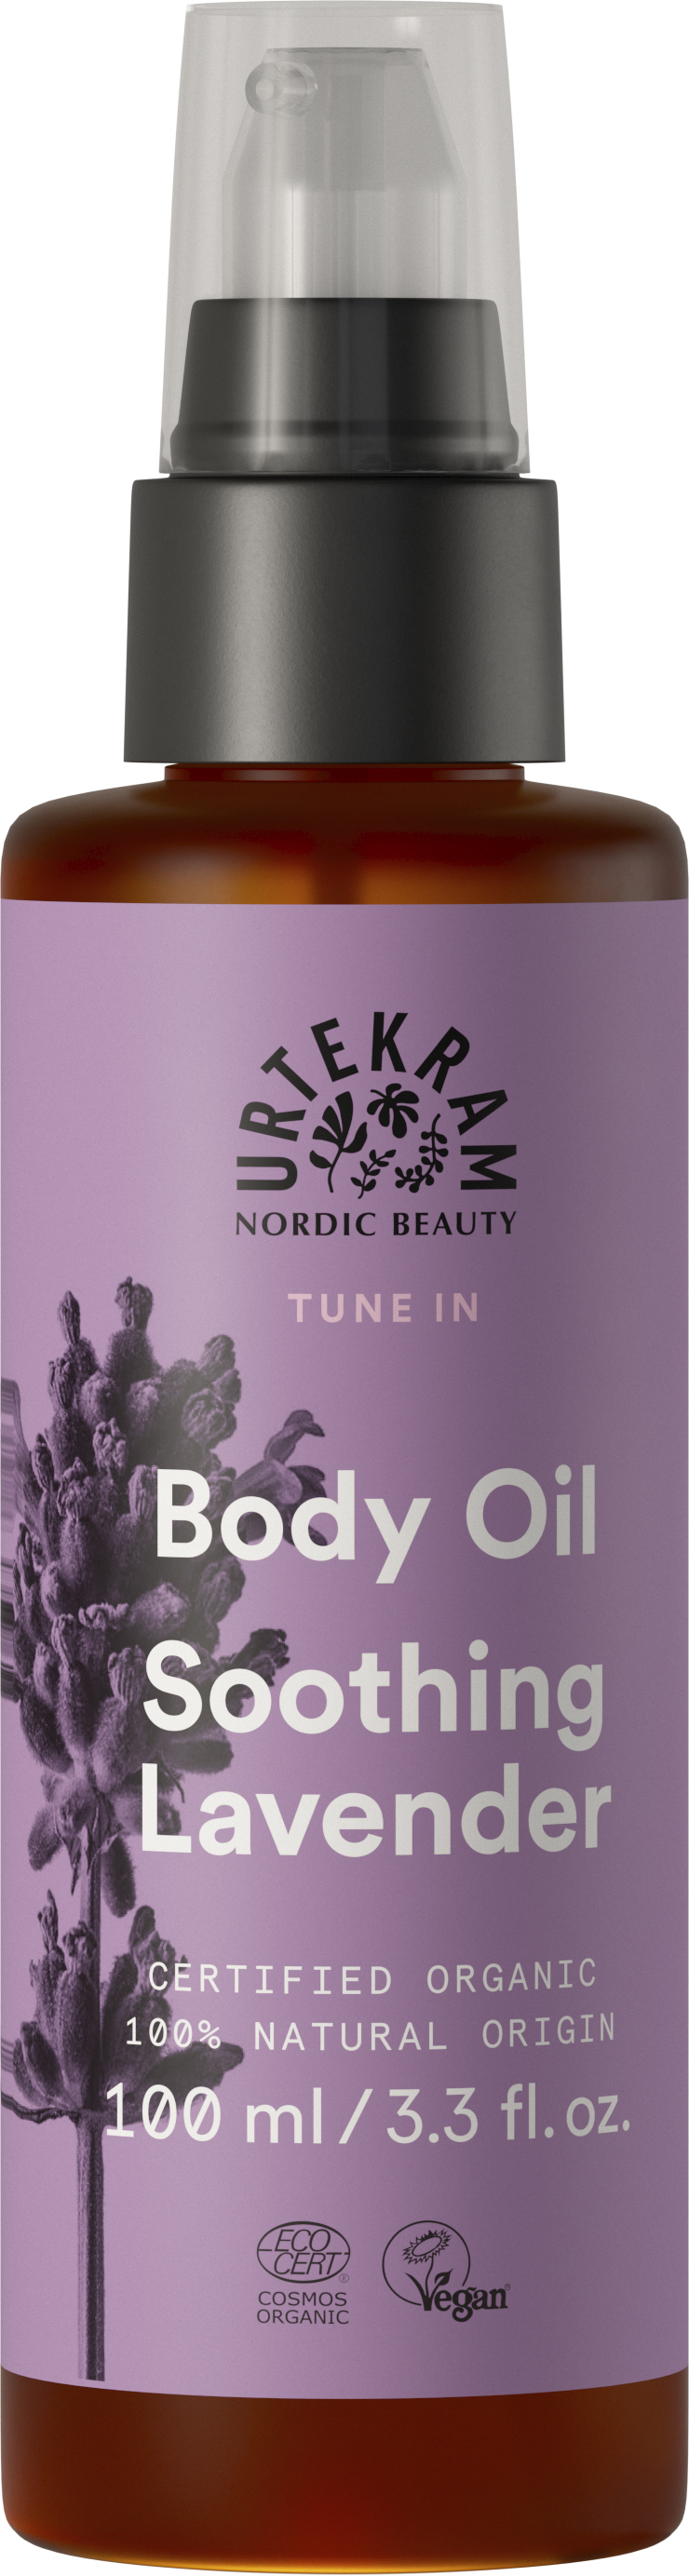 Soothing Lavender Boby Oil - Urtekram